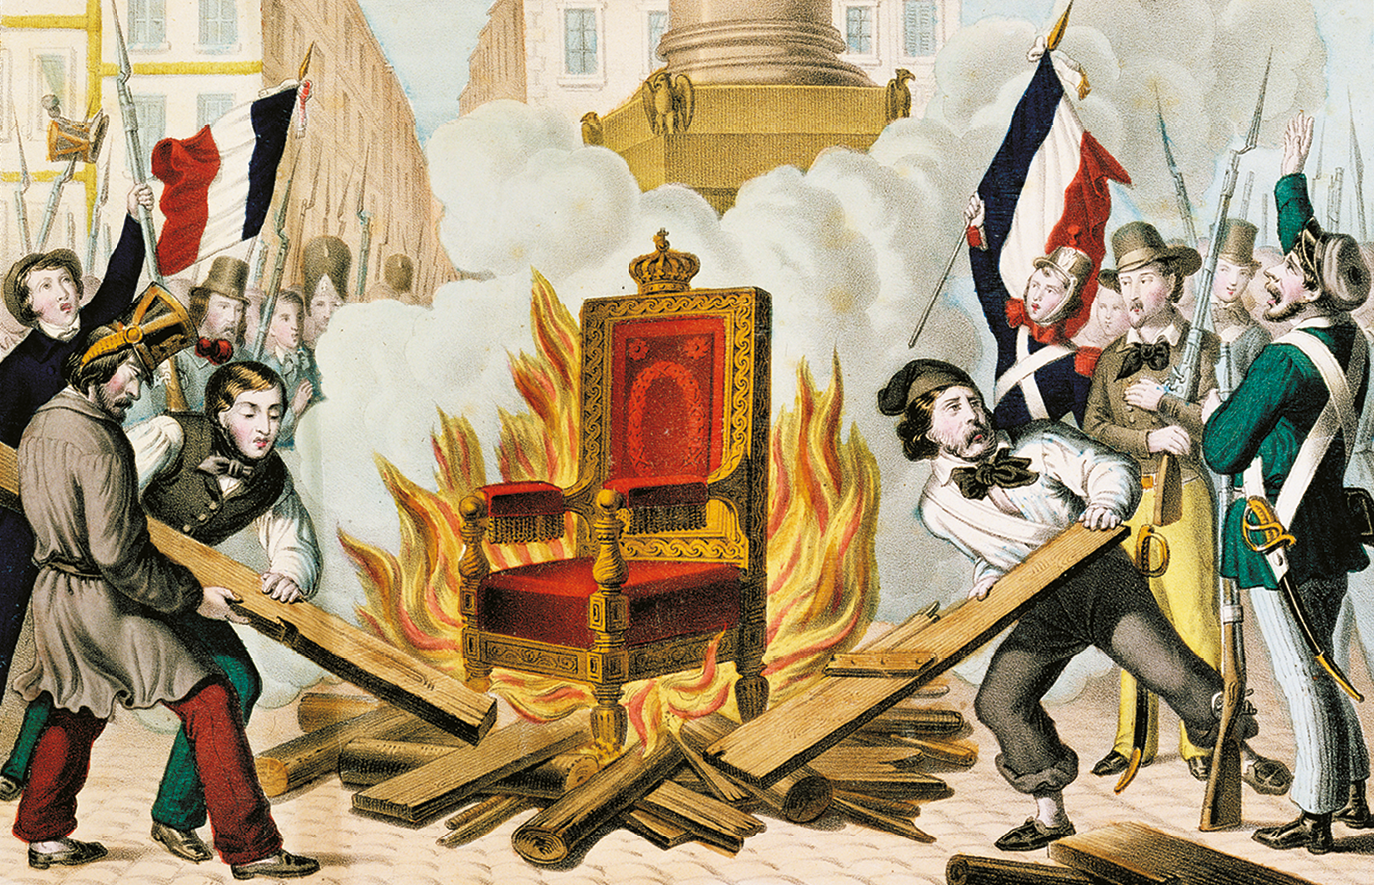 Litogravura. Centralizado, um trono vermelho com detalhes em dourado está em uma fogueira. Ao redor, dois homens colocam madeira na fogueira enquanto outros homens, alguns fardados e armados e outros com roupas coloridas, levantam as mãos. Ao fundo, algumas bandeiras da França.